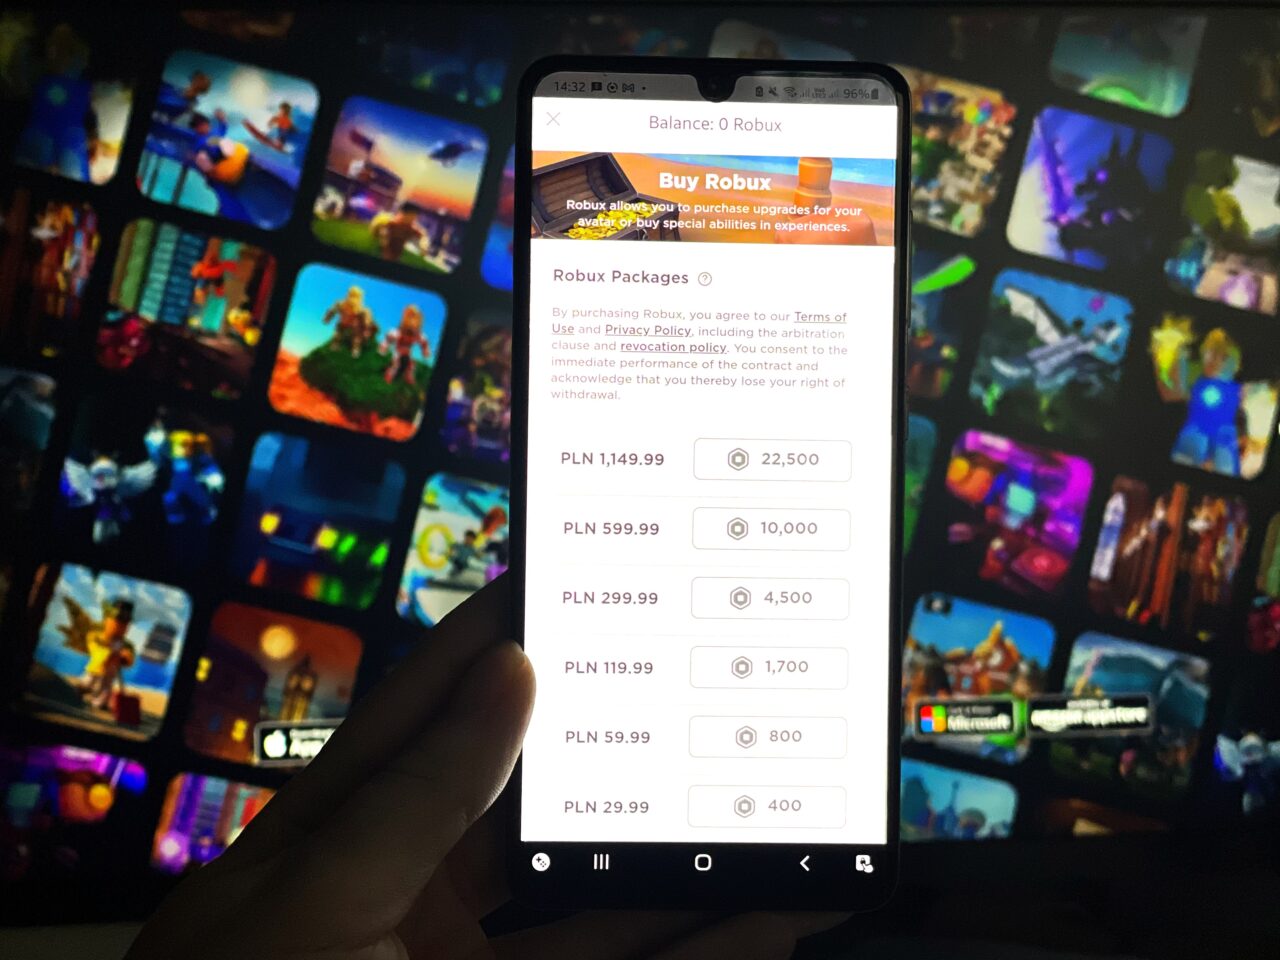 Dłoń trzymająca smartfon z otwartą aplikacją oferującą zakup waluty wirtualnej Robux w grze Roblox, z rozmytym tłem pokazującym barwne ekranowe sceny z gier wideo.